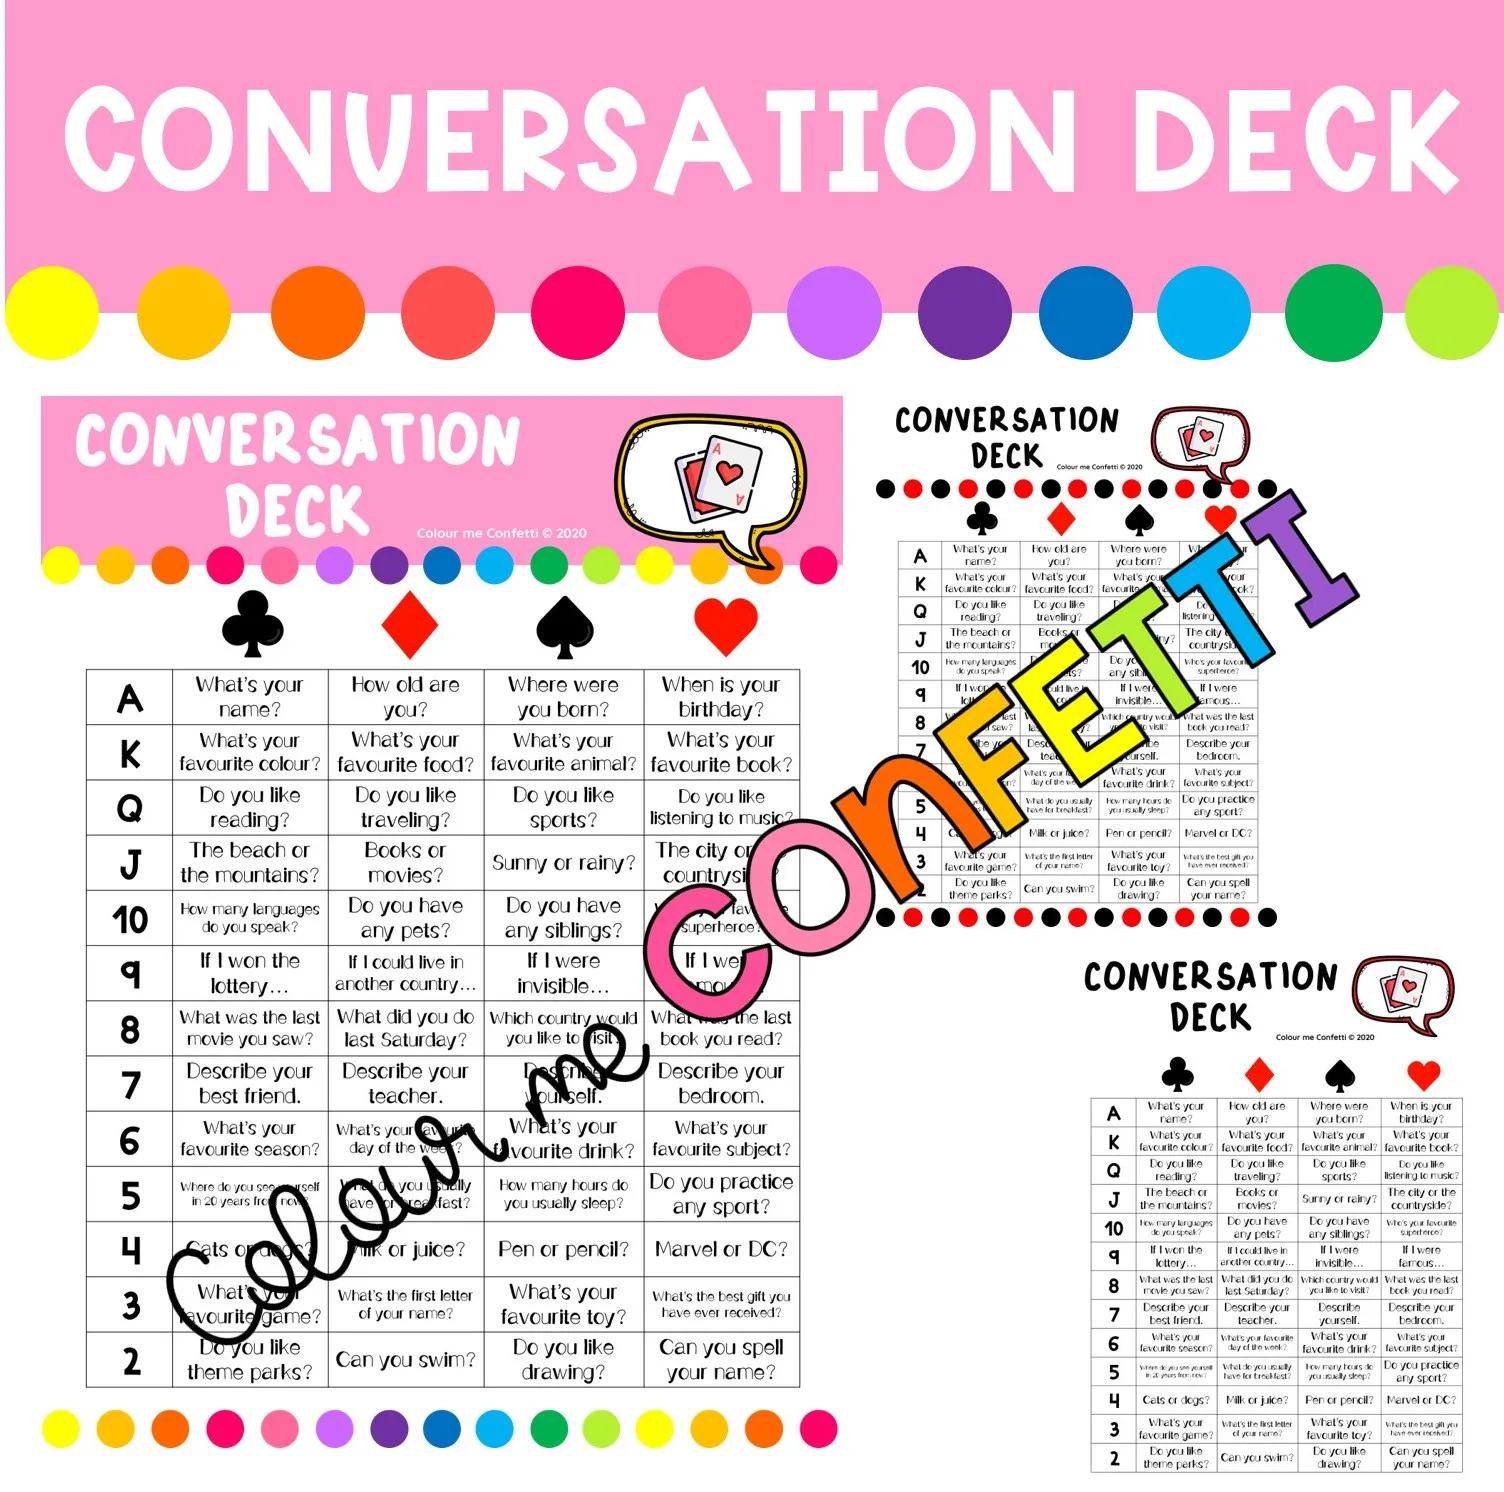 Conversation Deck - Game